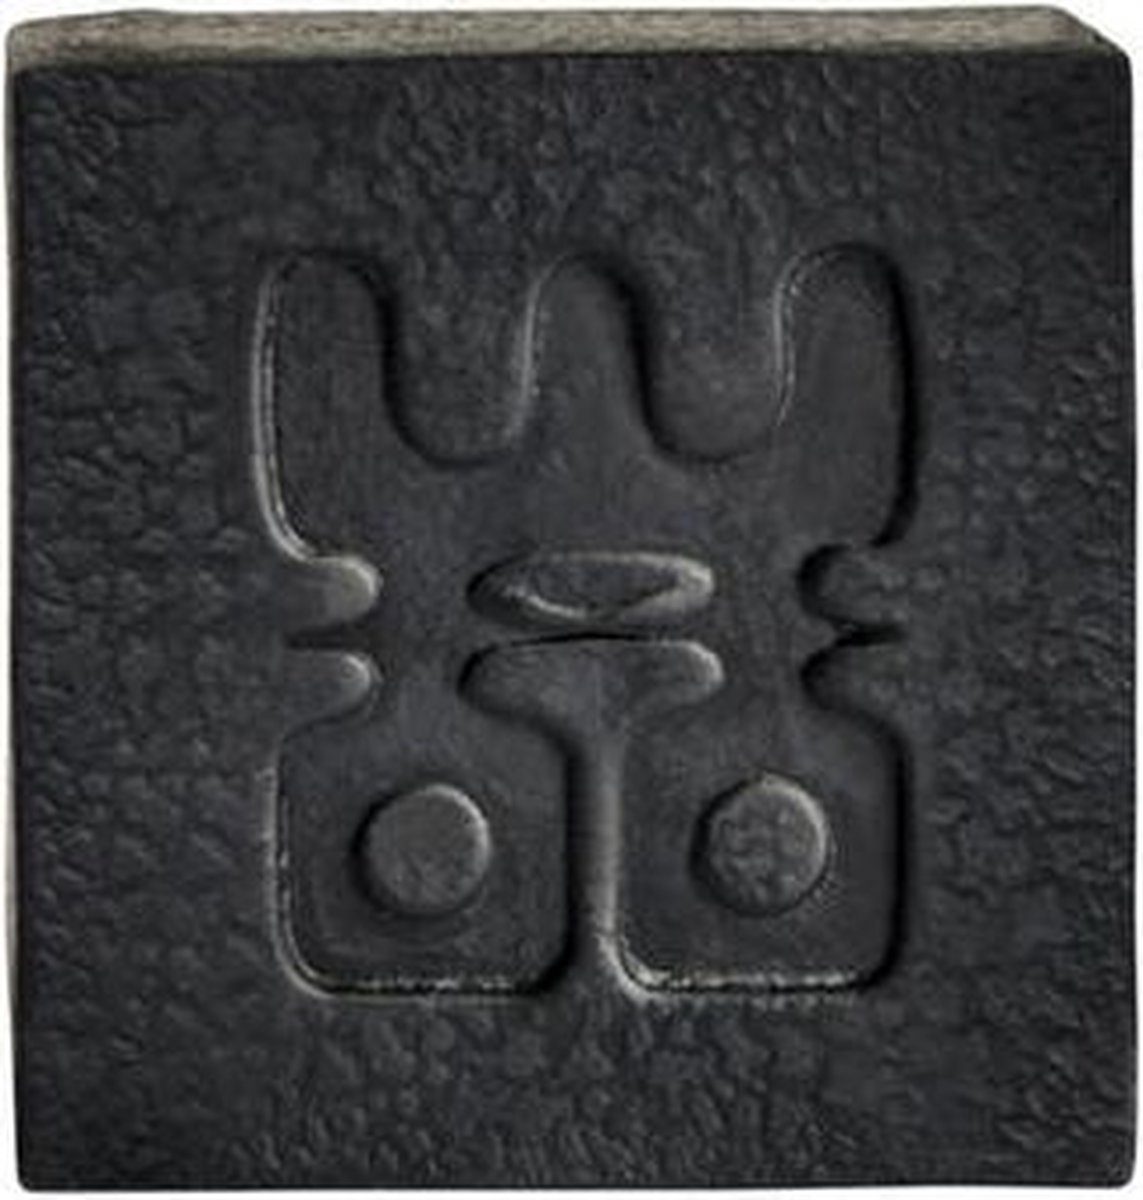 WOO Charcoal Soap - Houtskoolzeep - Zwart - Geur: Tranquility - Duurzaam Design - Uniek Cadeau